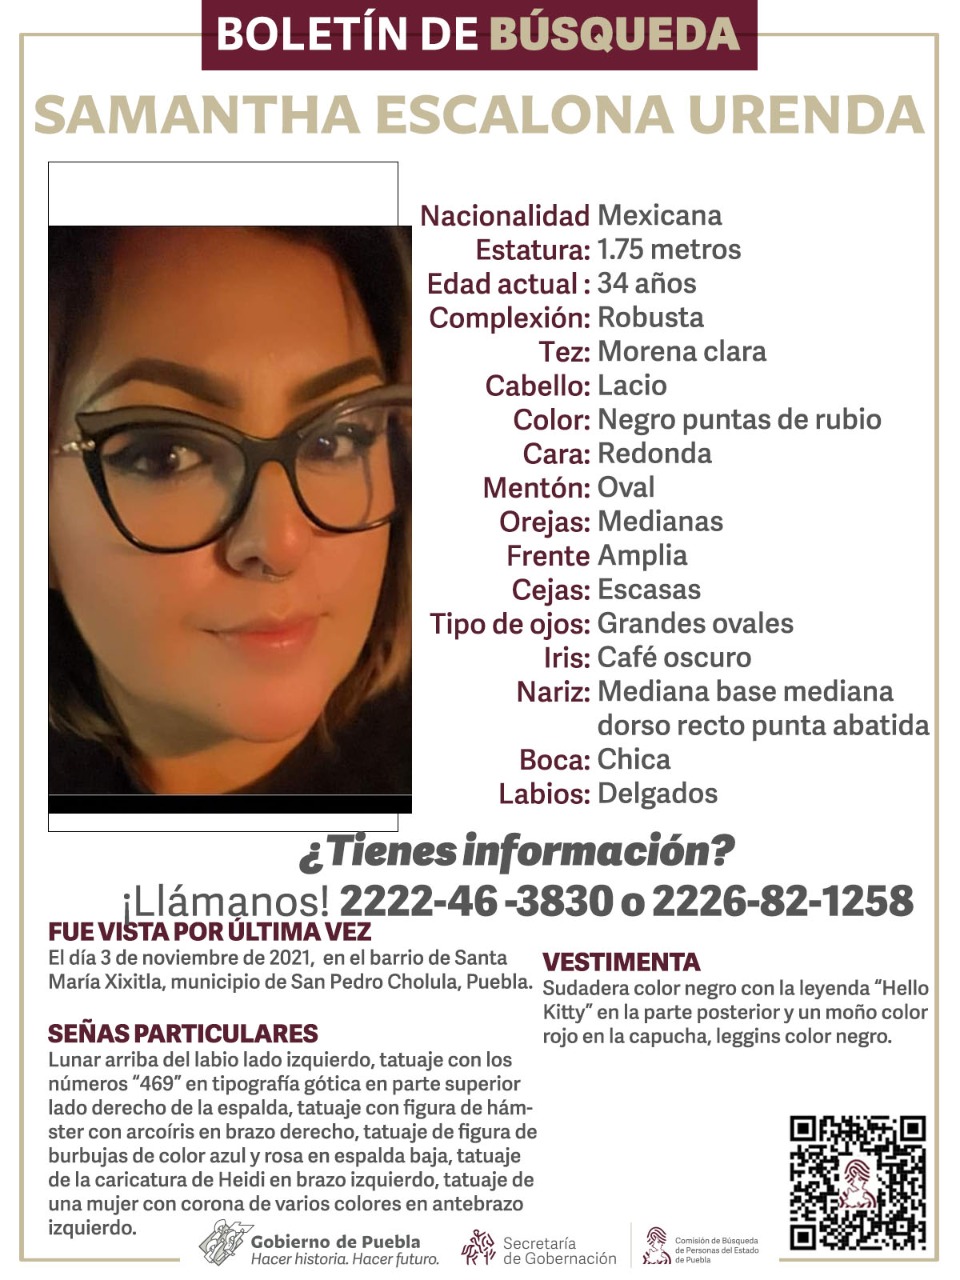 Buscan a Samantha en San Pedro Cholula; desapareció el 3 de noviembre